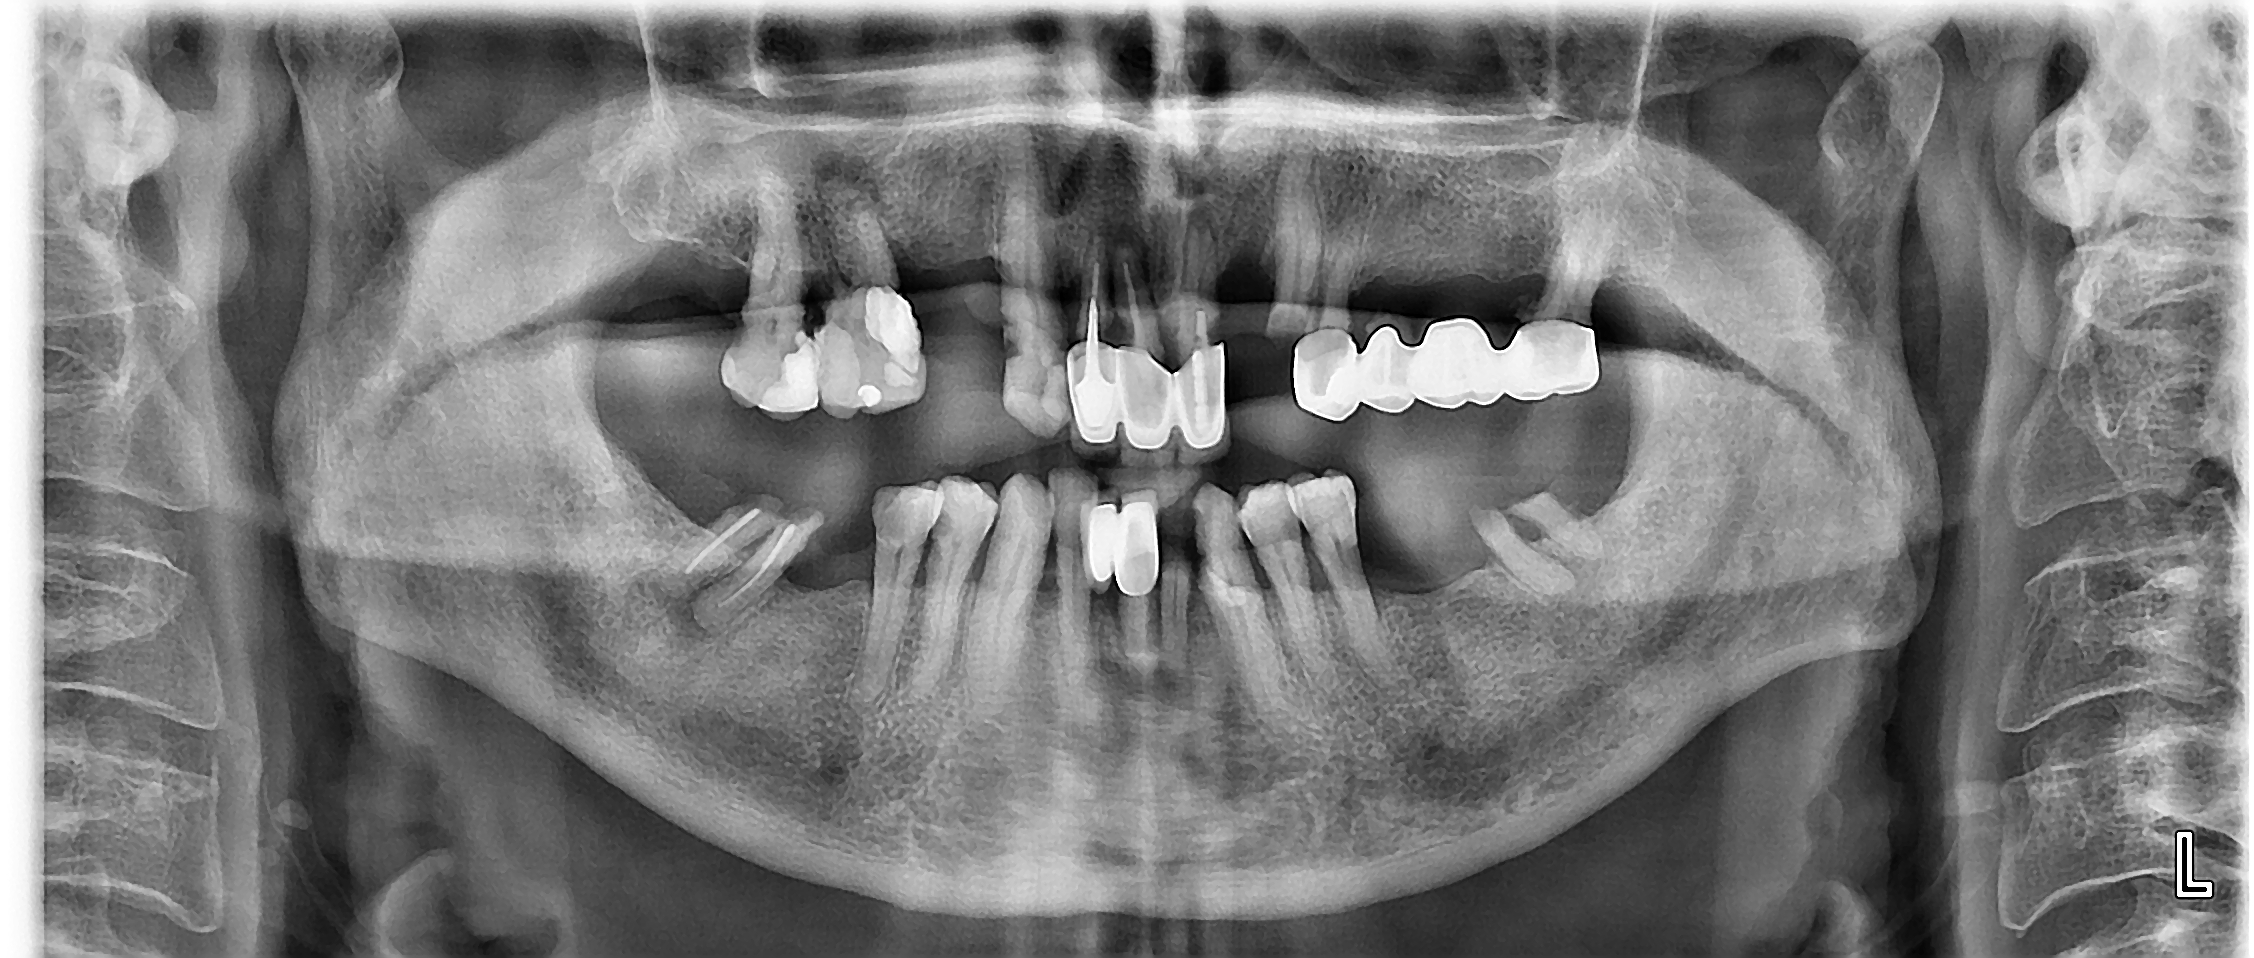 Πανοραμική ακτινογραφία με την αρχική κατάσταση της ασθενούς - Ενεργή περιοδοντική νόσος, τερηδονισμένα δόντια και κακότεχνες προσθετικές εργασίες